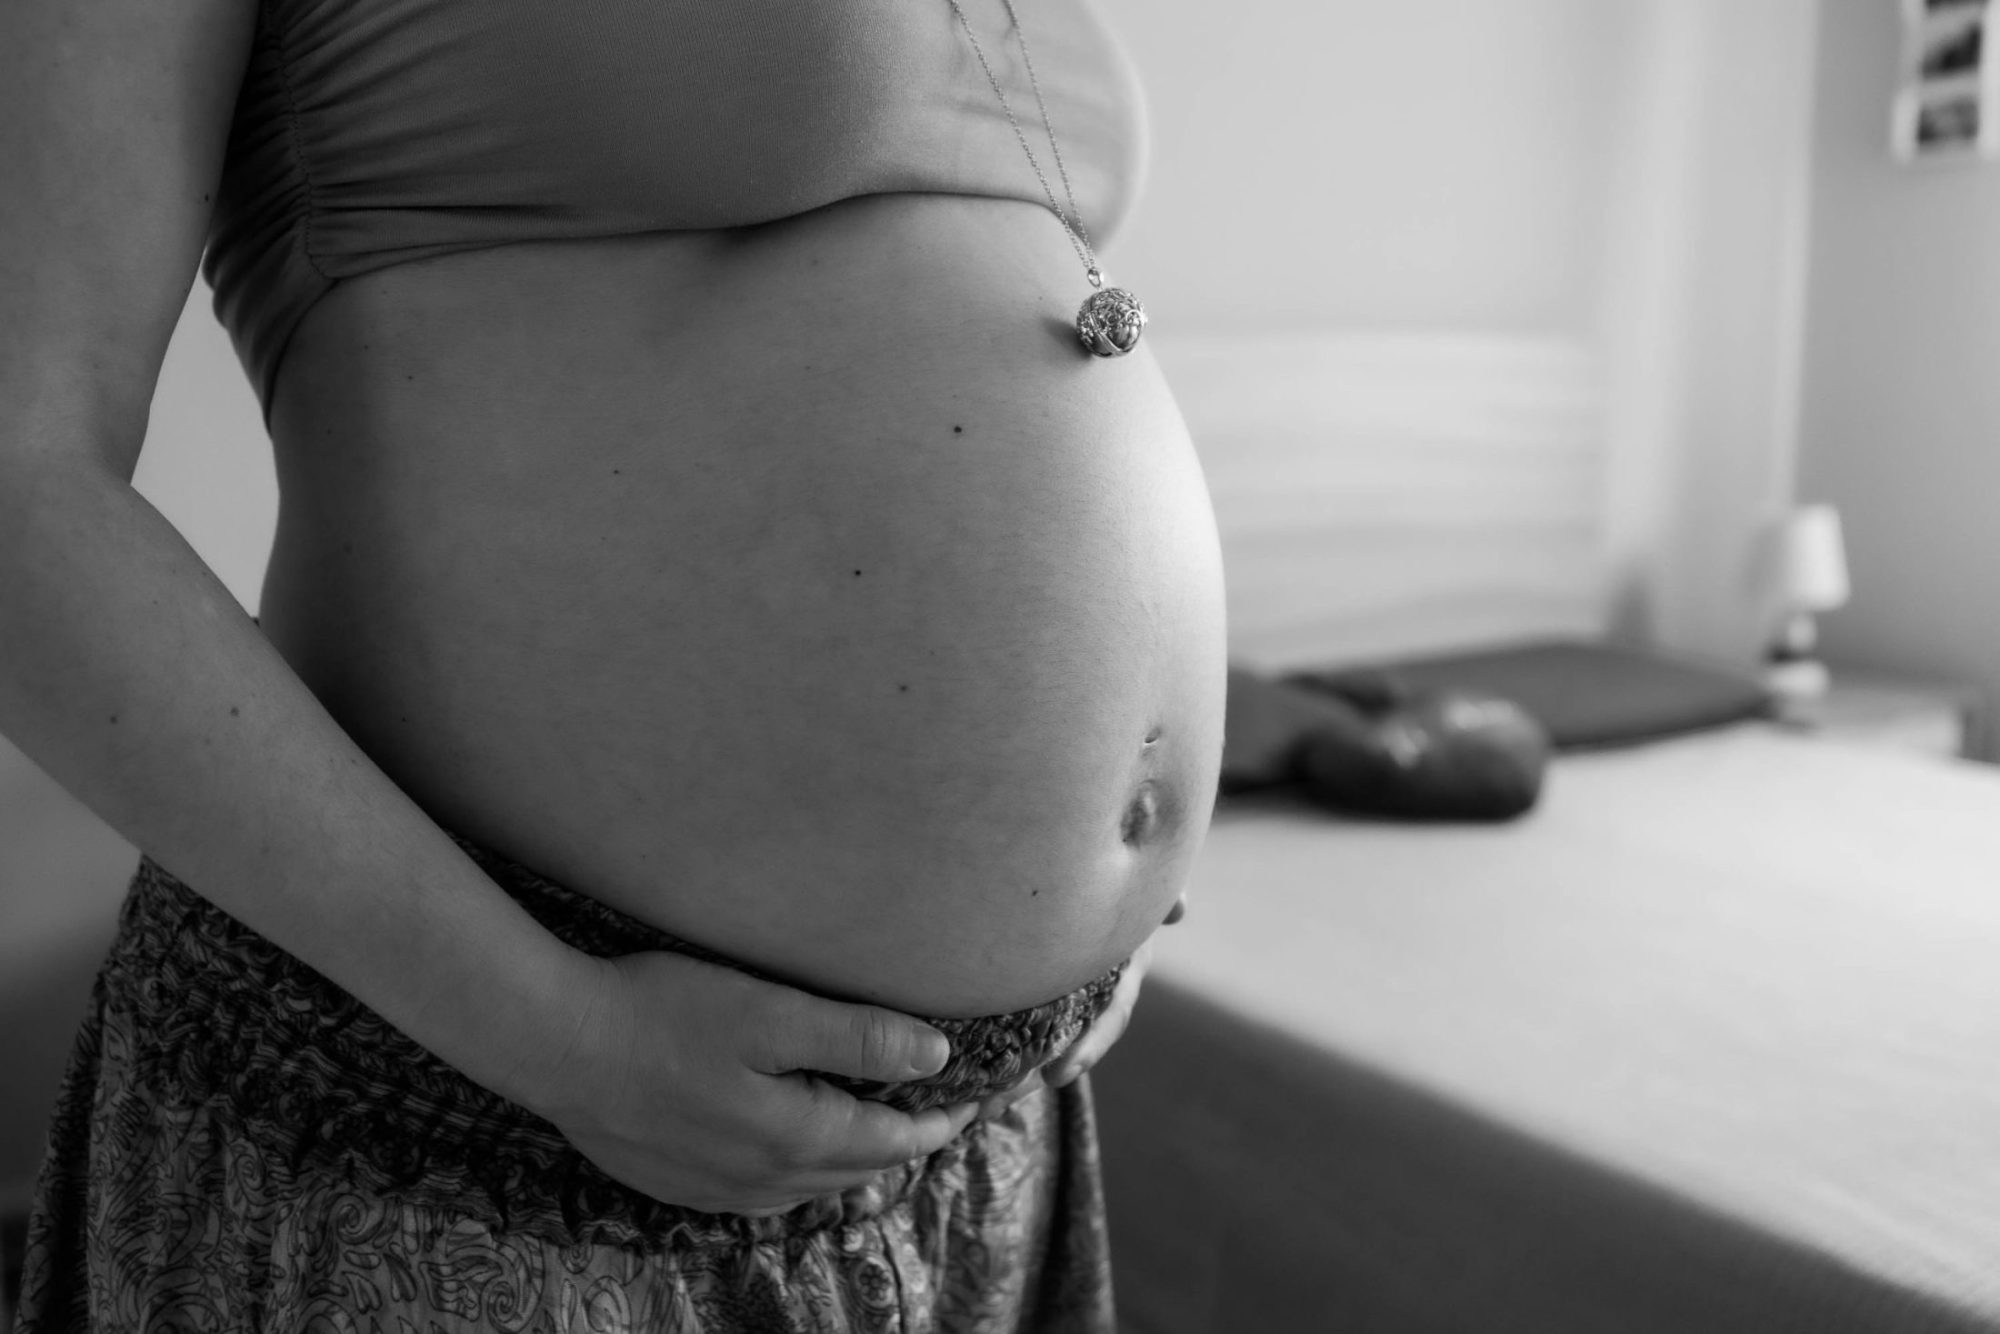 fotografia pancia donna incinta felice gravidanza maternità dolce attesa bianco e nero pancione premaman servizio fotografico 